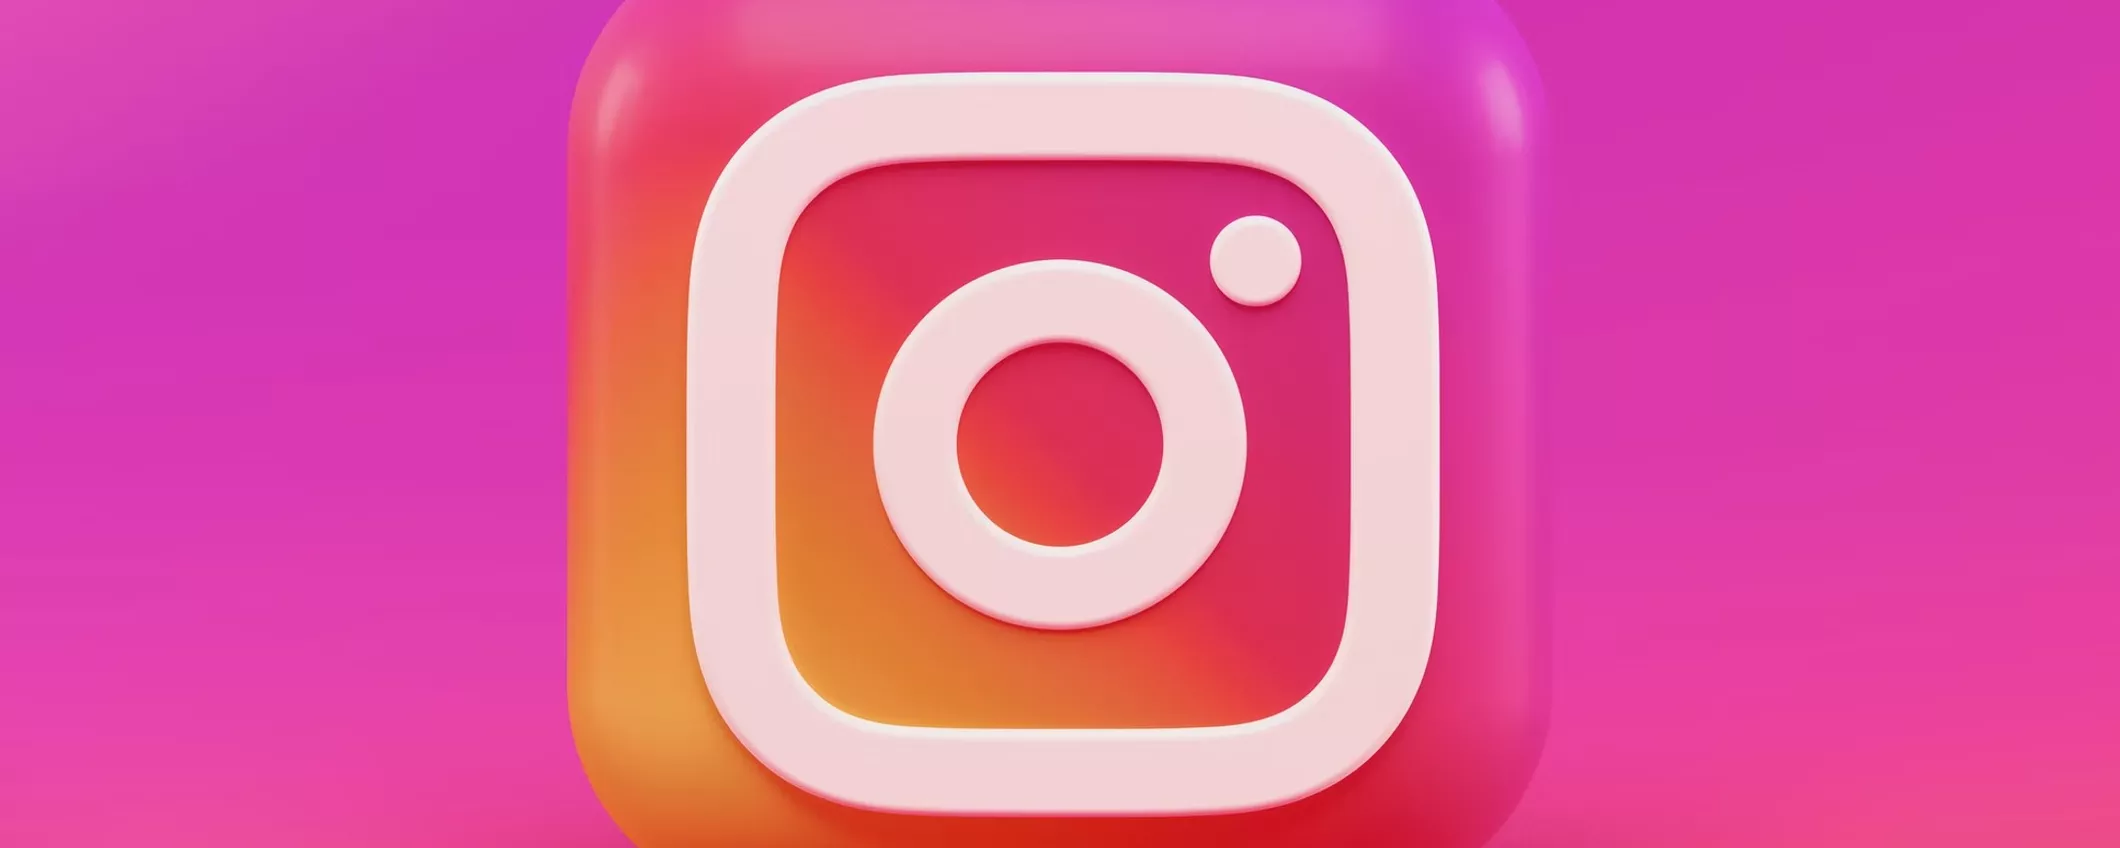 Instagram vuole più contenuti originali sulla sua piattaforma: ecco l'importante novità